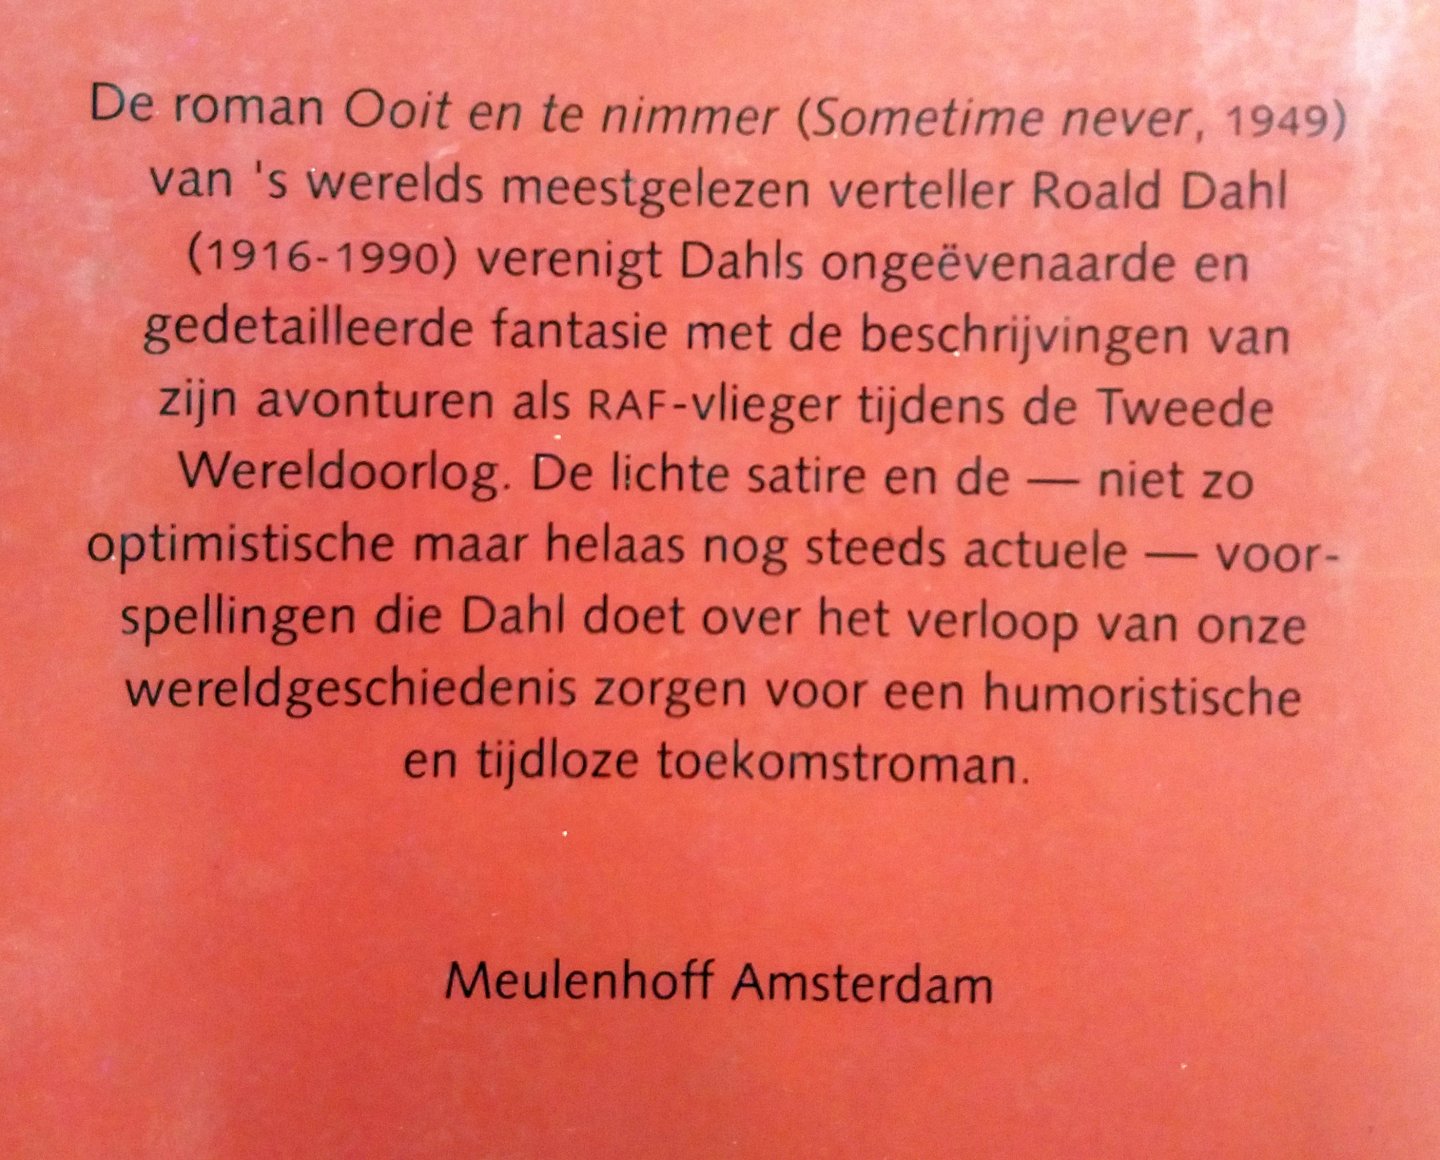 Dahl, Roald - Ooit en te nimmer (Ex.3)